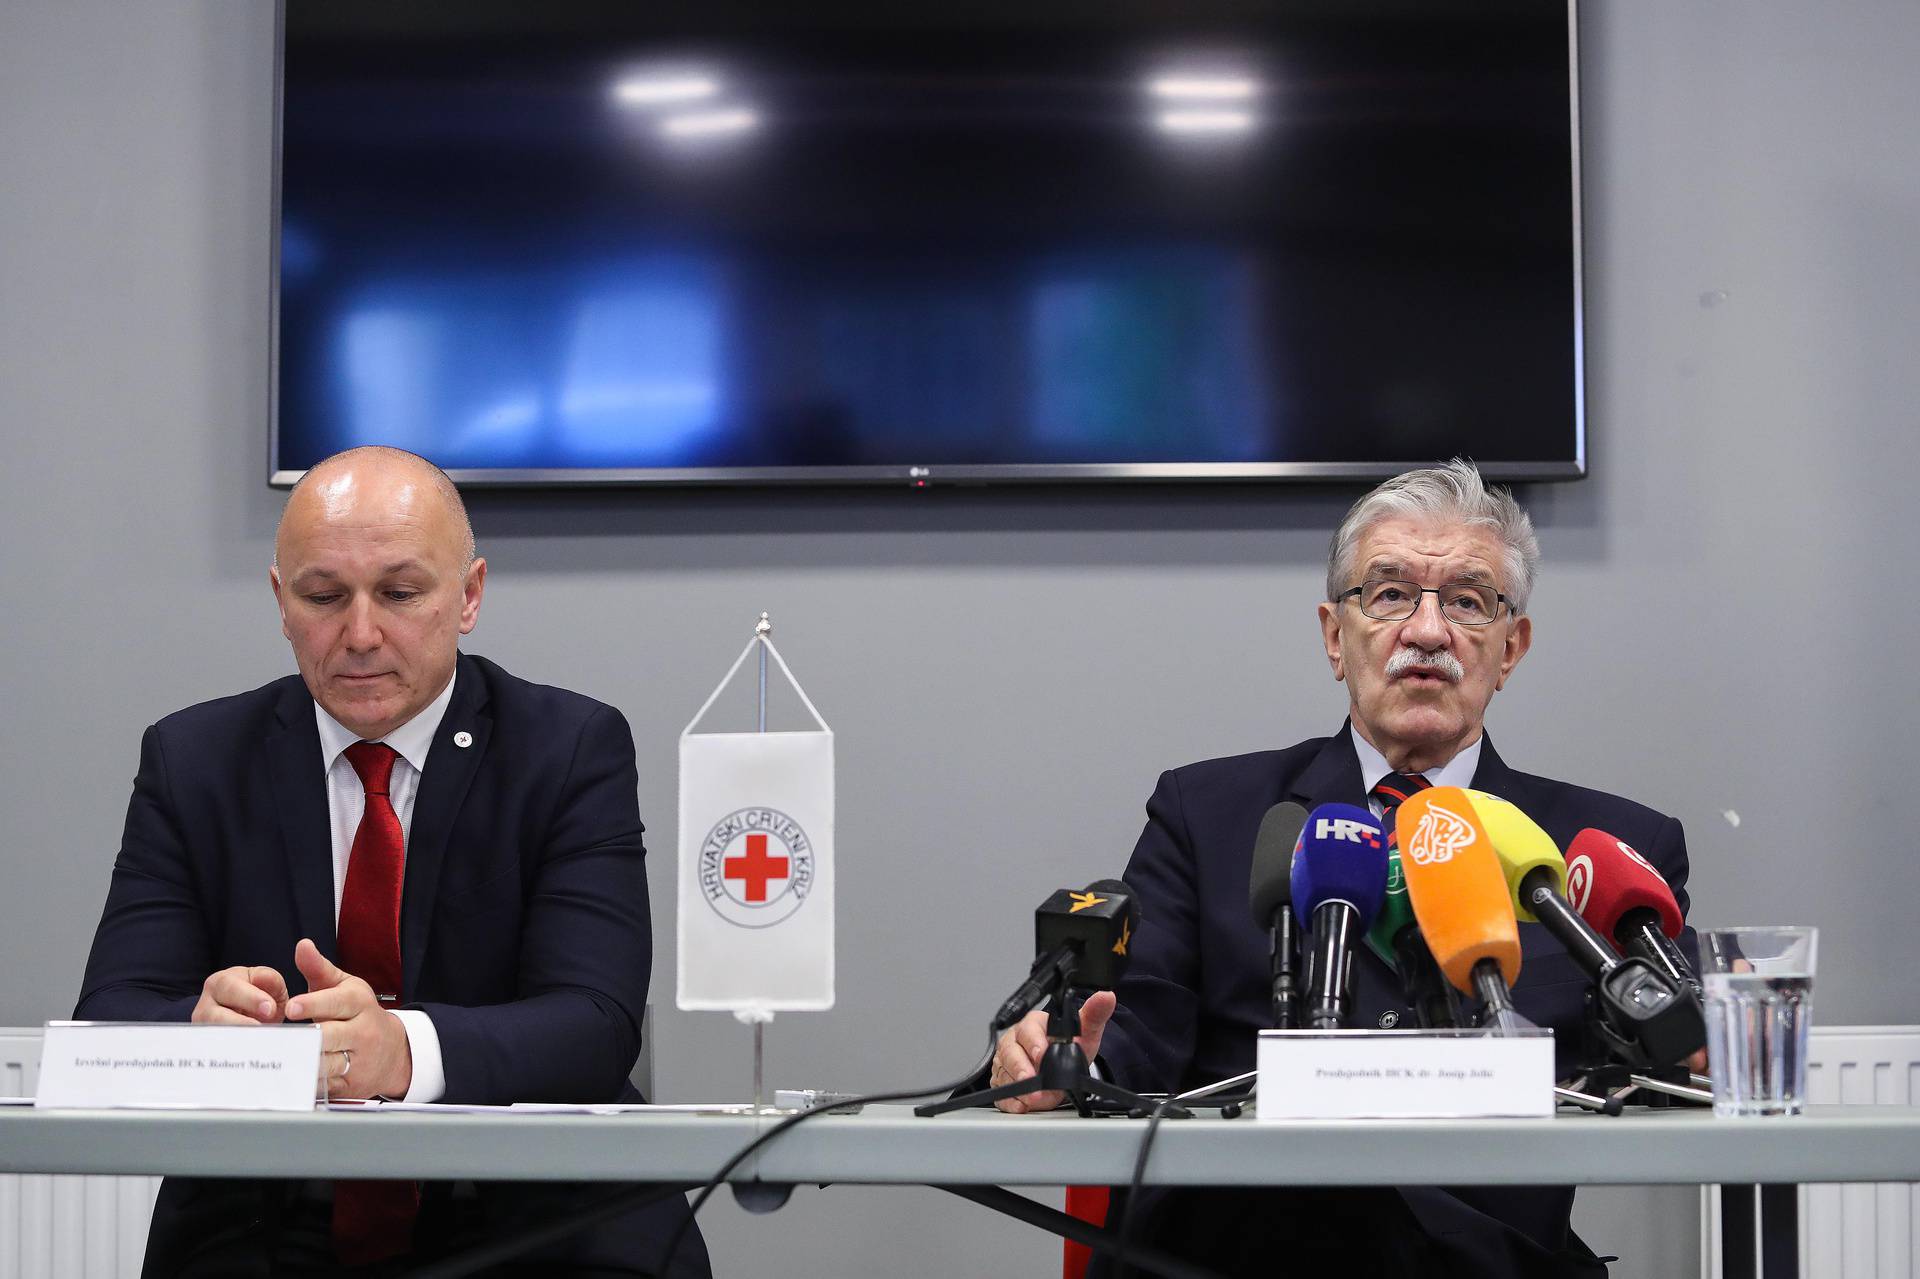 Zagreb: Crveni križ predstavio projekt namijenjen osobama koje su izgubile posao zbog korone